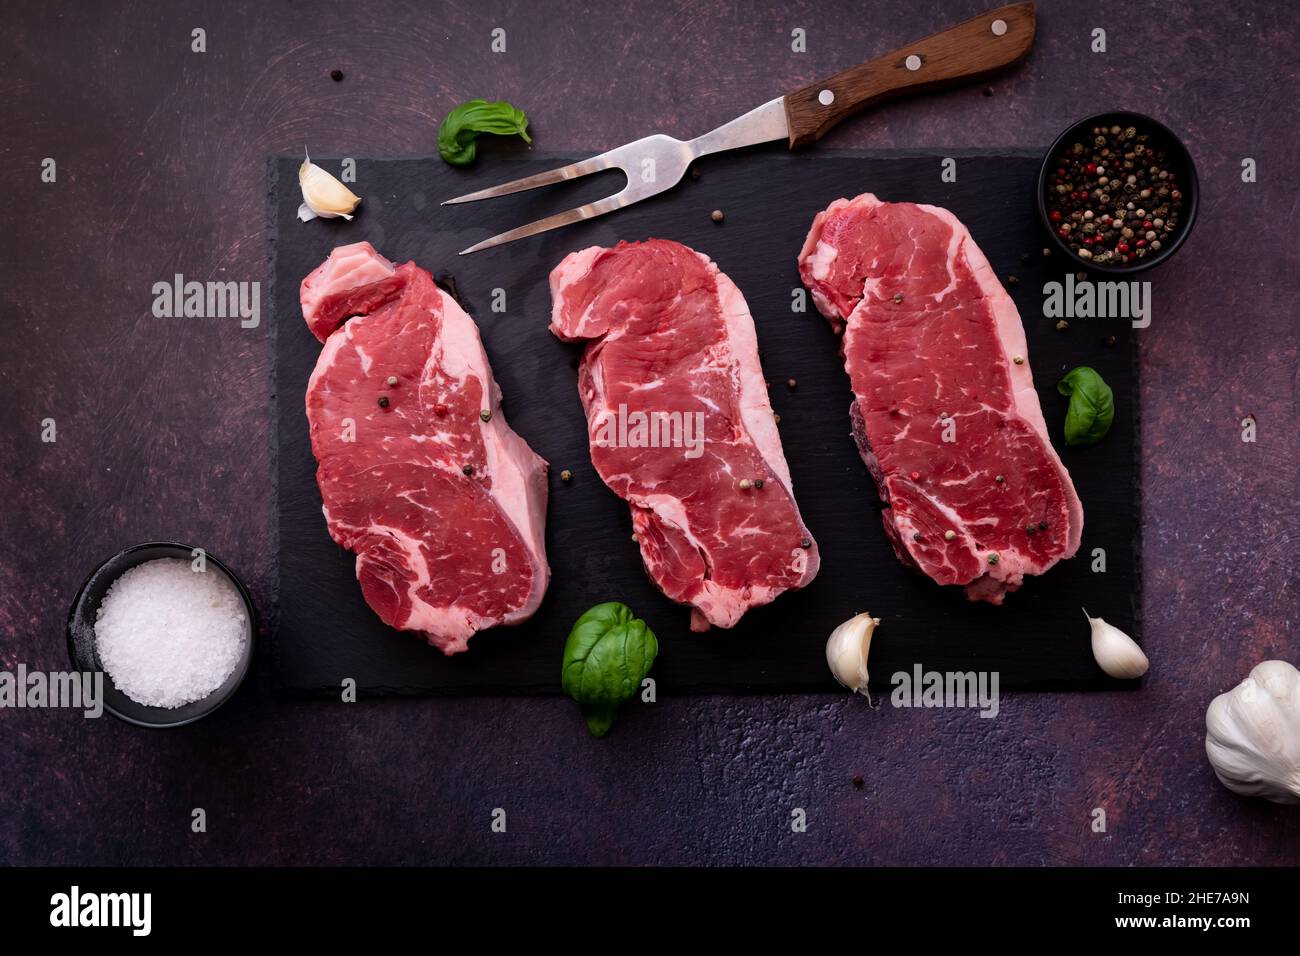 Vue de dessus en bas des steaks de striploin crus sur un tableau d'ardoise noir, prêt pour le gril Banque D'Images